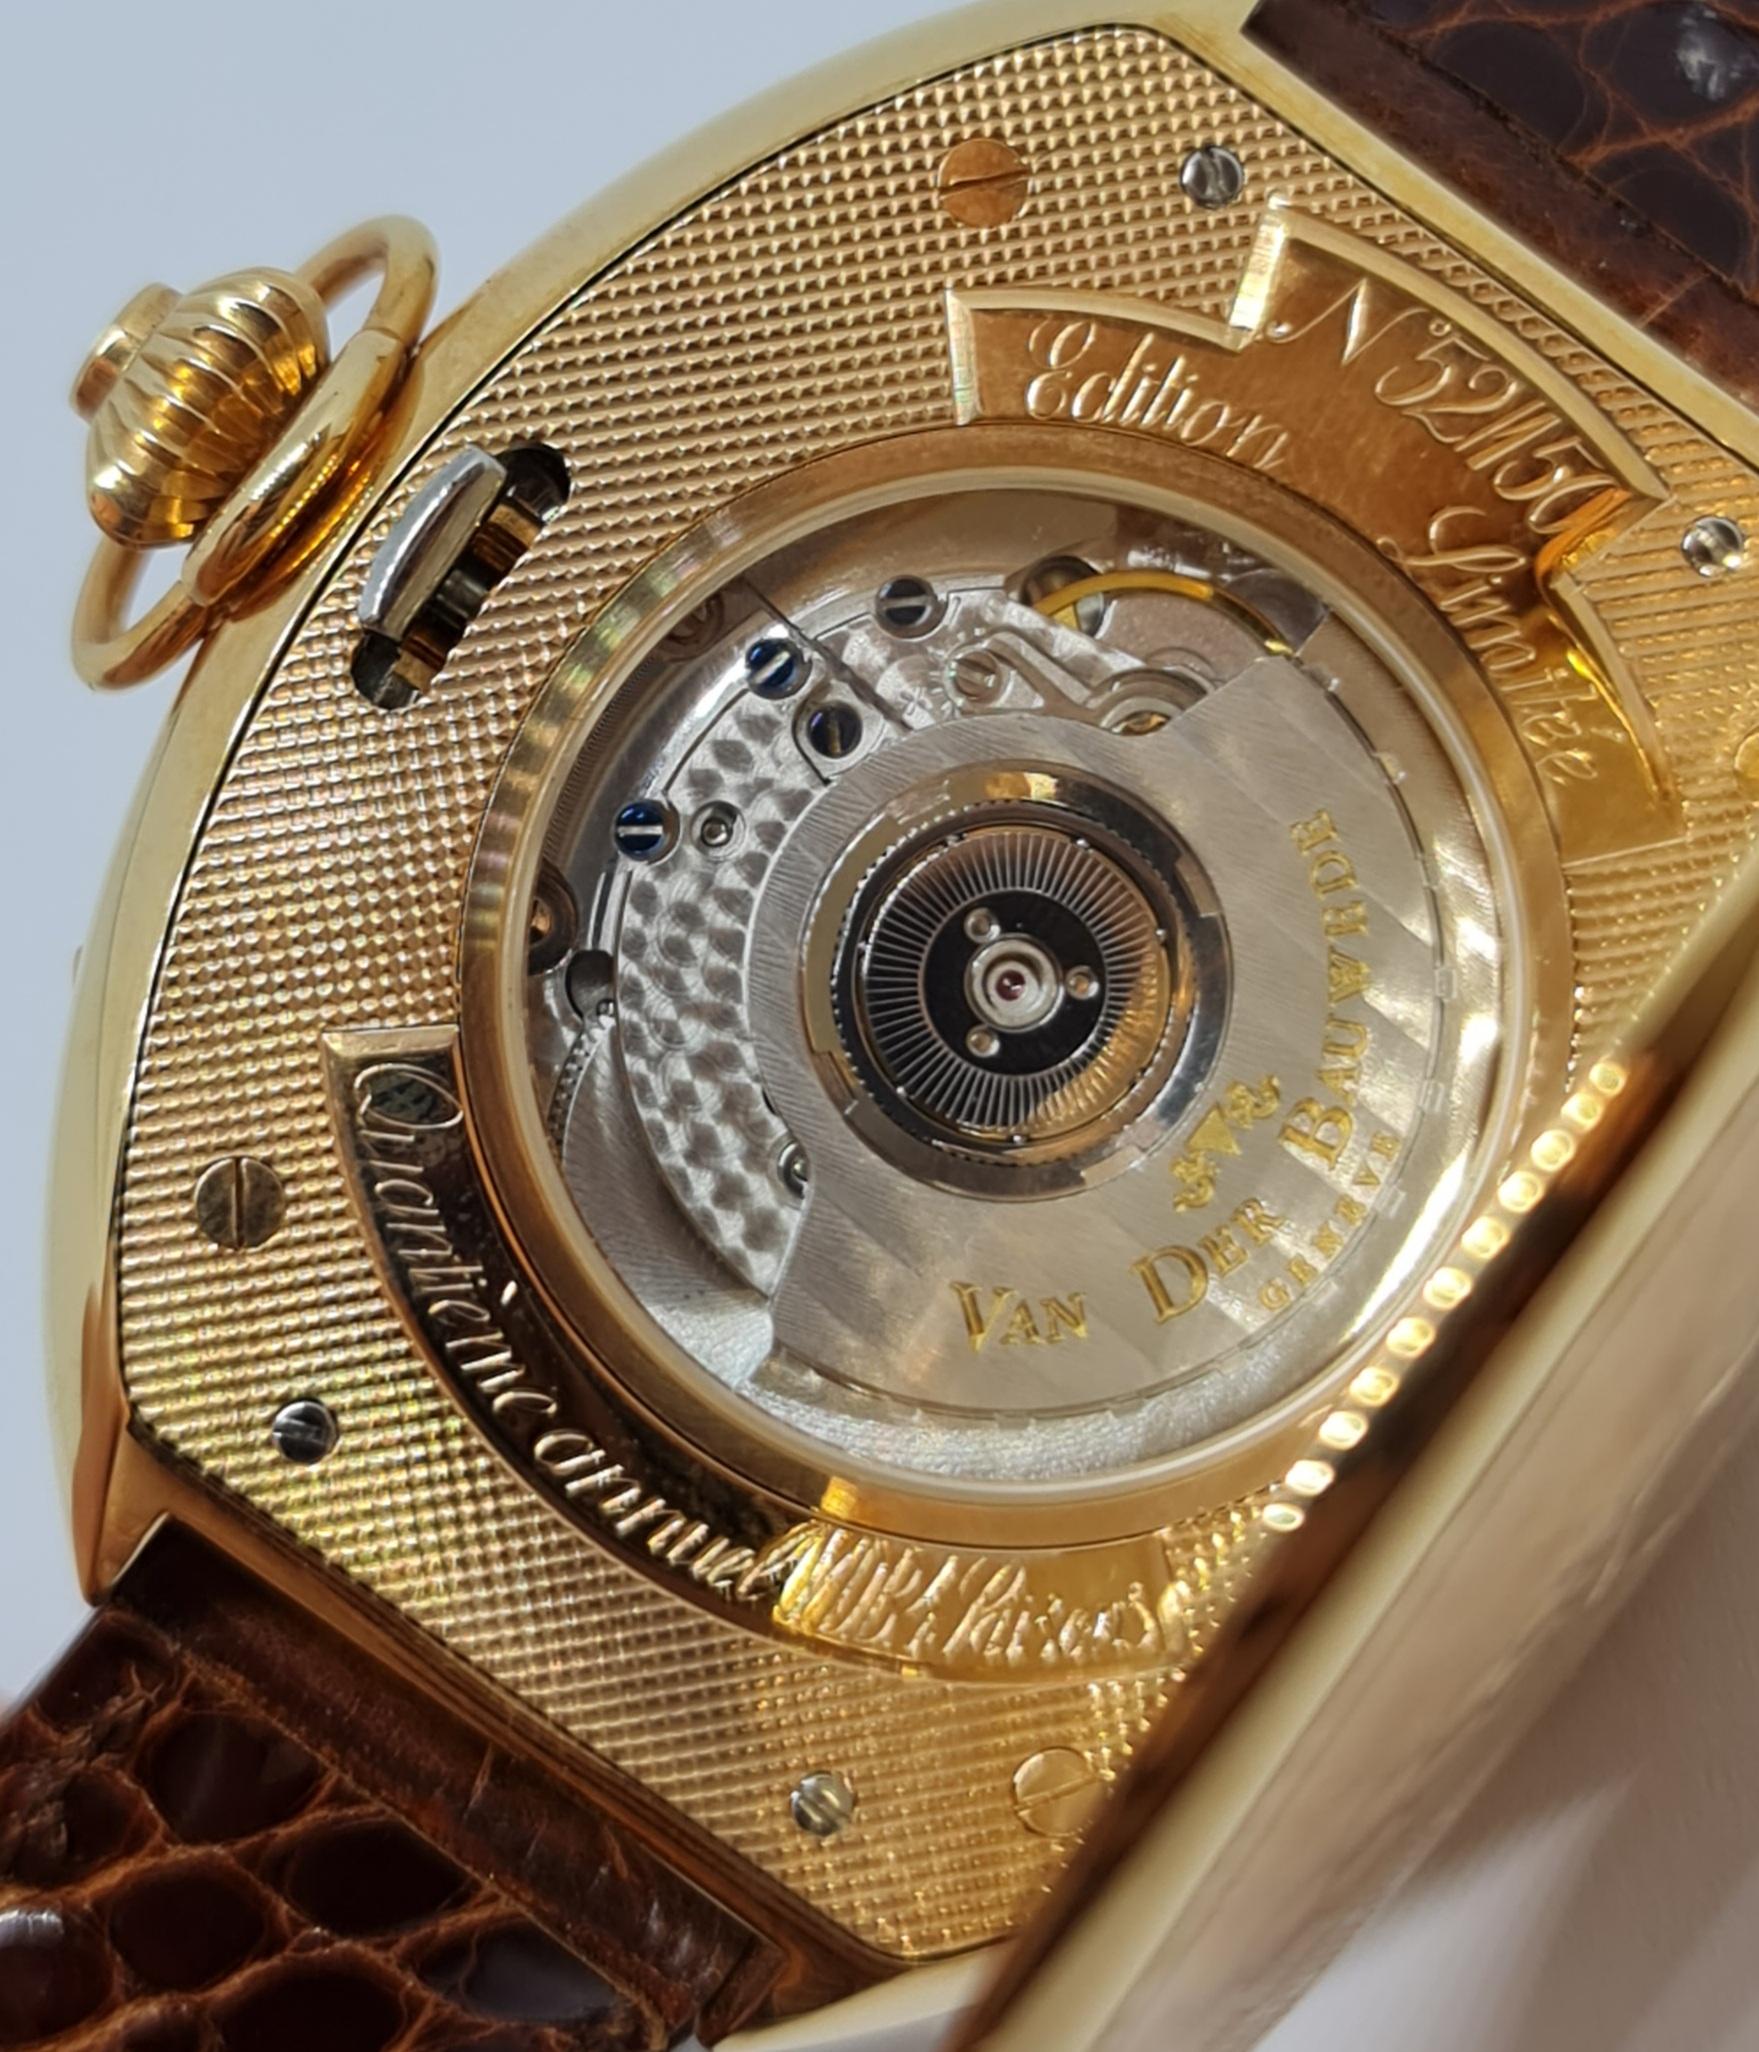 Pink Gold Van Der Bauwede Quantième annuel 4saisons Wrist Watch- Limited Edition For Sale 5